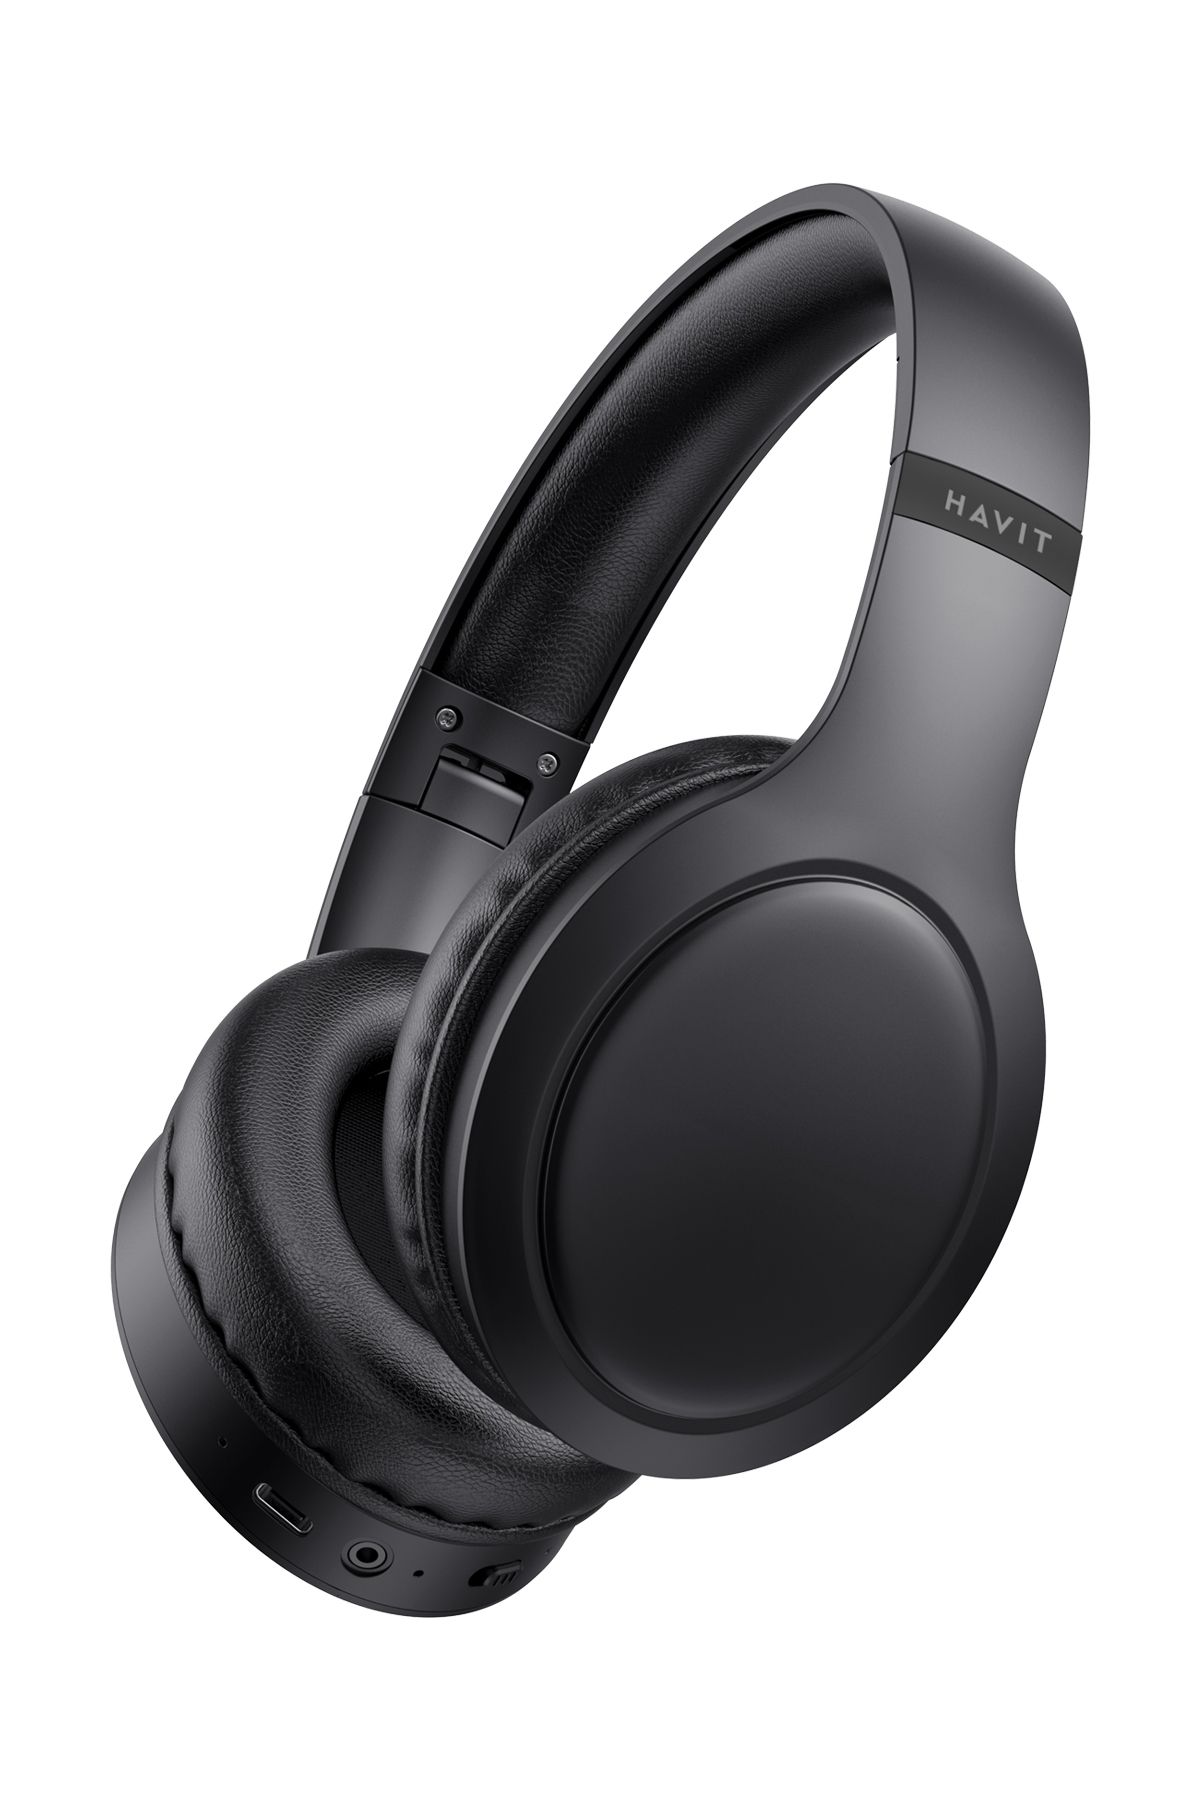 Havit H633BT Katlanabilir Kulak Üstü Bluetooth Kulaklık - Çift Cihaz Desteği